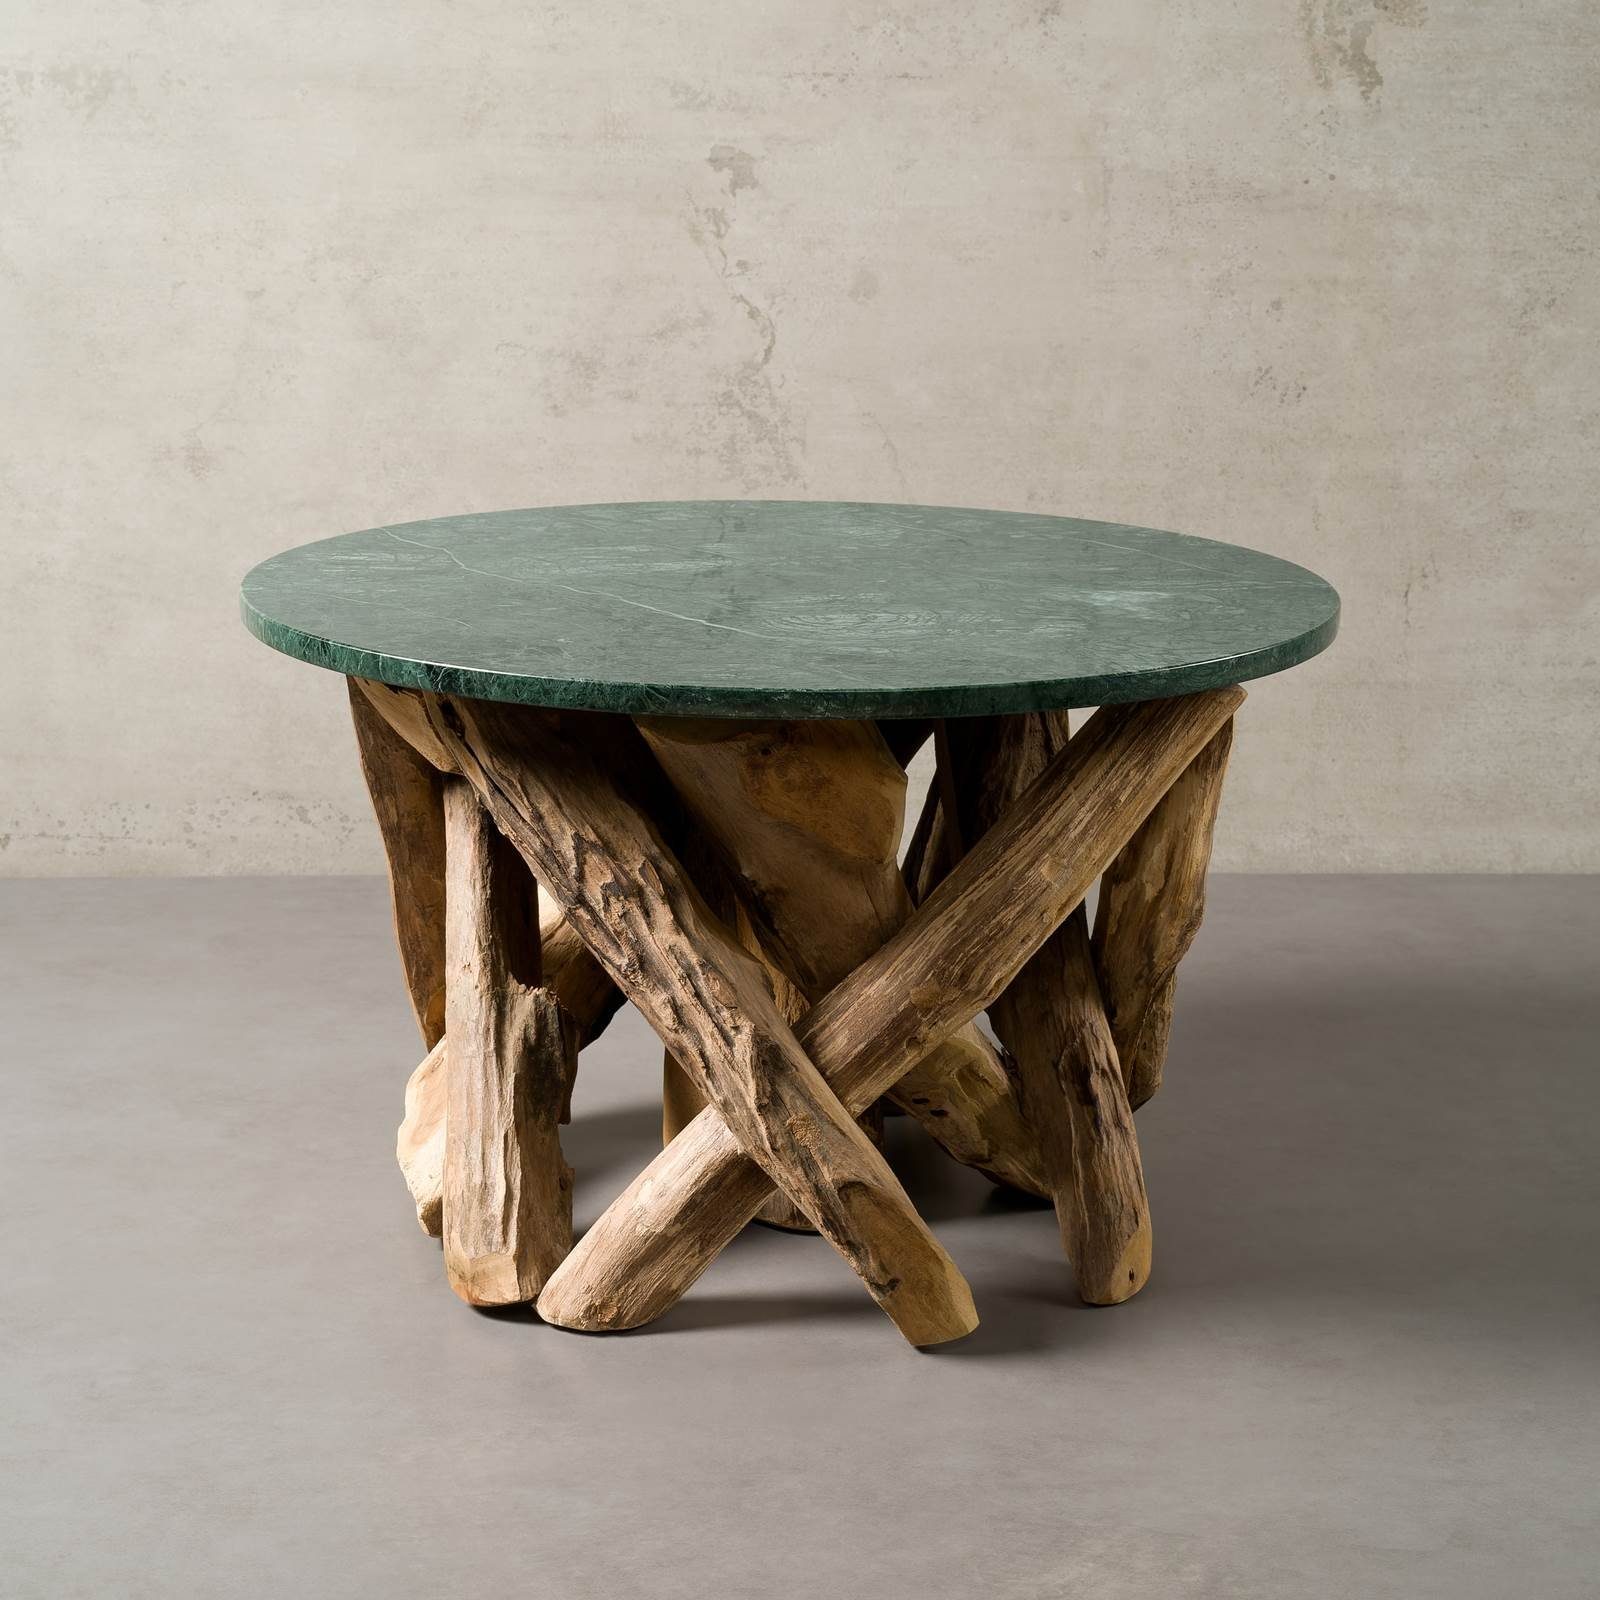 MAGNA Atelier Couchtisch LAKE TAHOE mit Marmor Tischplatte, Sofatisch rund, Wohnzimmertisch, Teakholz Gestell, 70x42cm